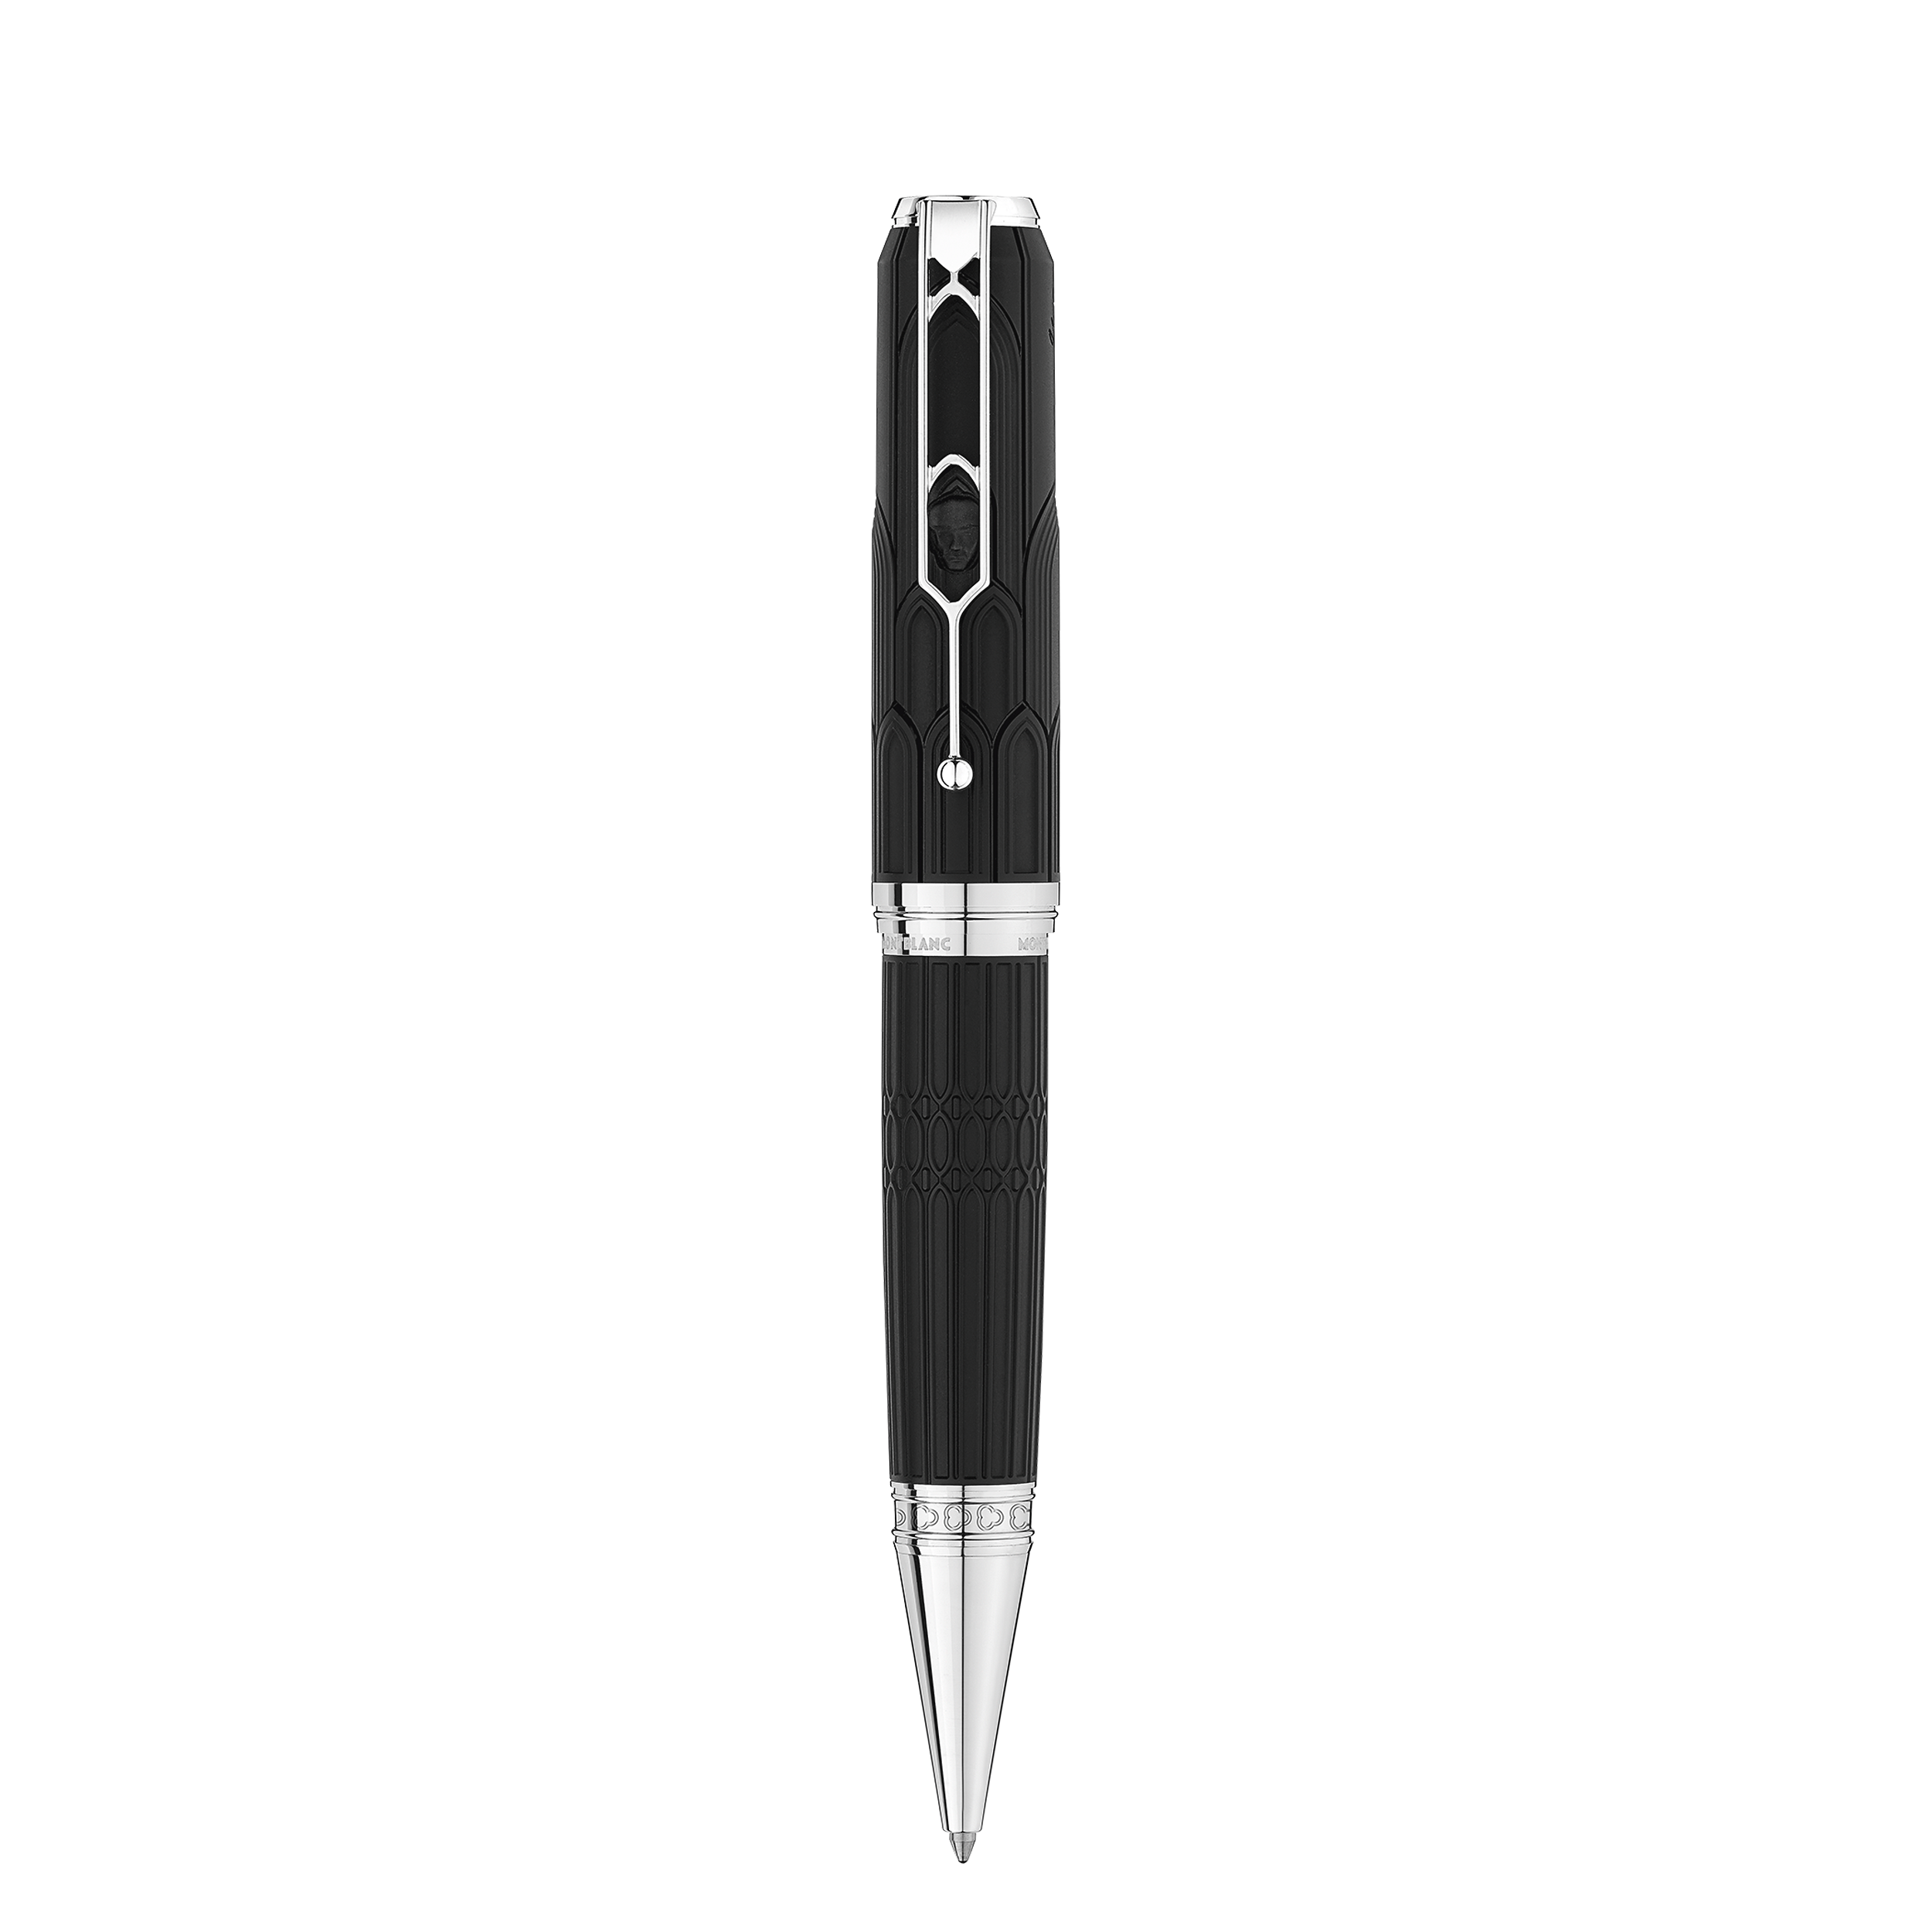 قلم حبر جاف من الإصدارات الخاصة بالكُتّاب إشادة بفيكتور هوغو بإصدار محدود